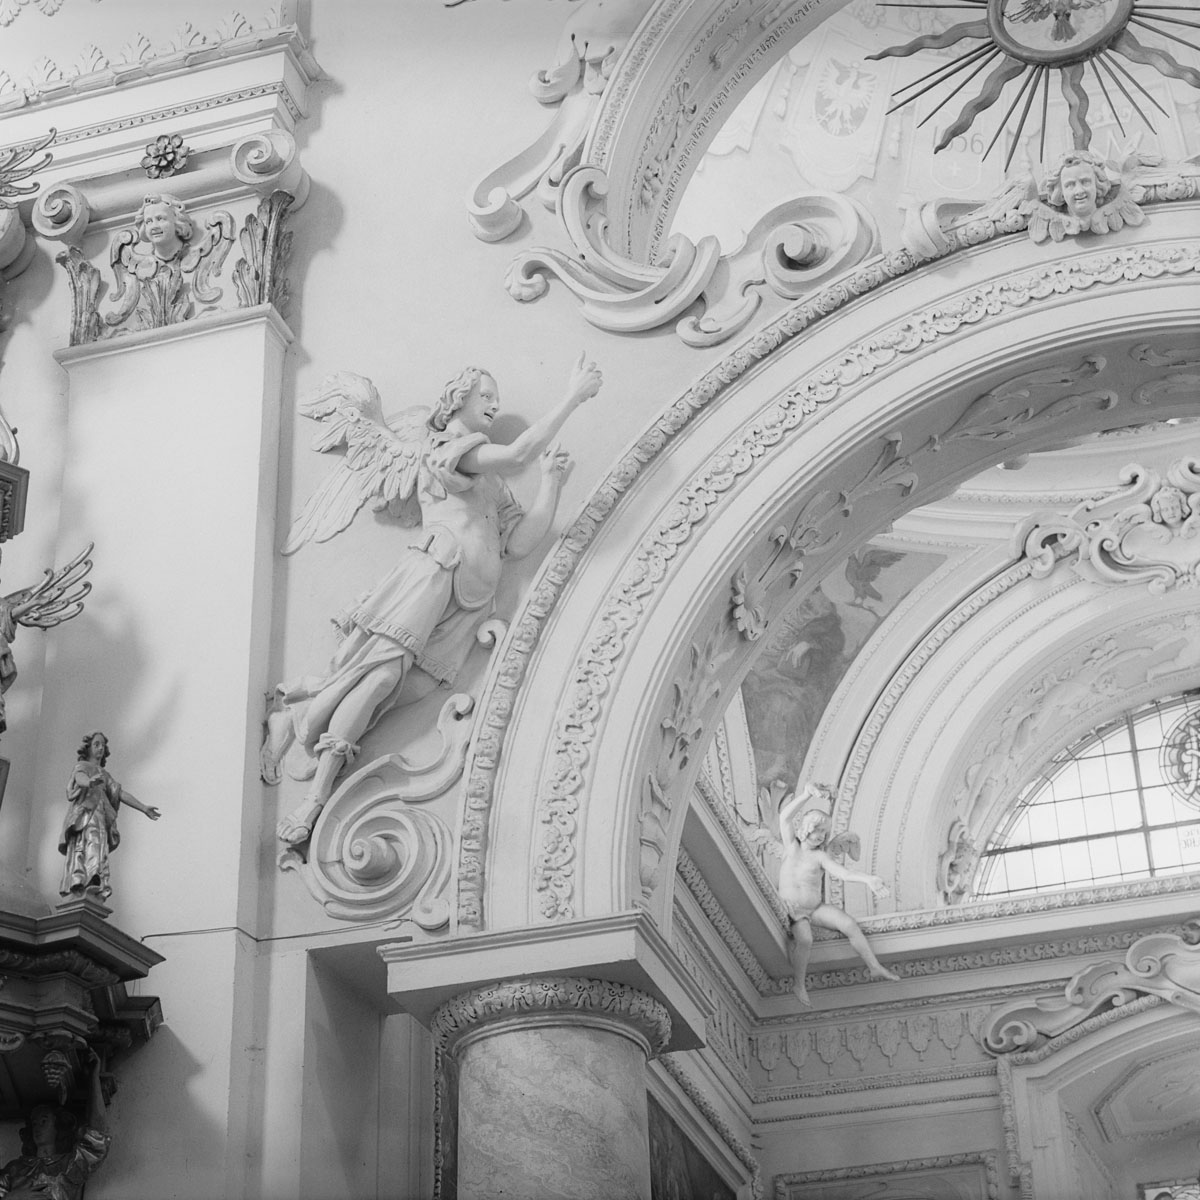 Tarłów – church interior